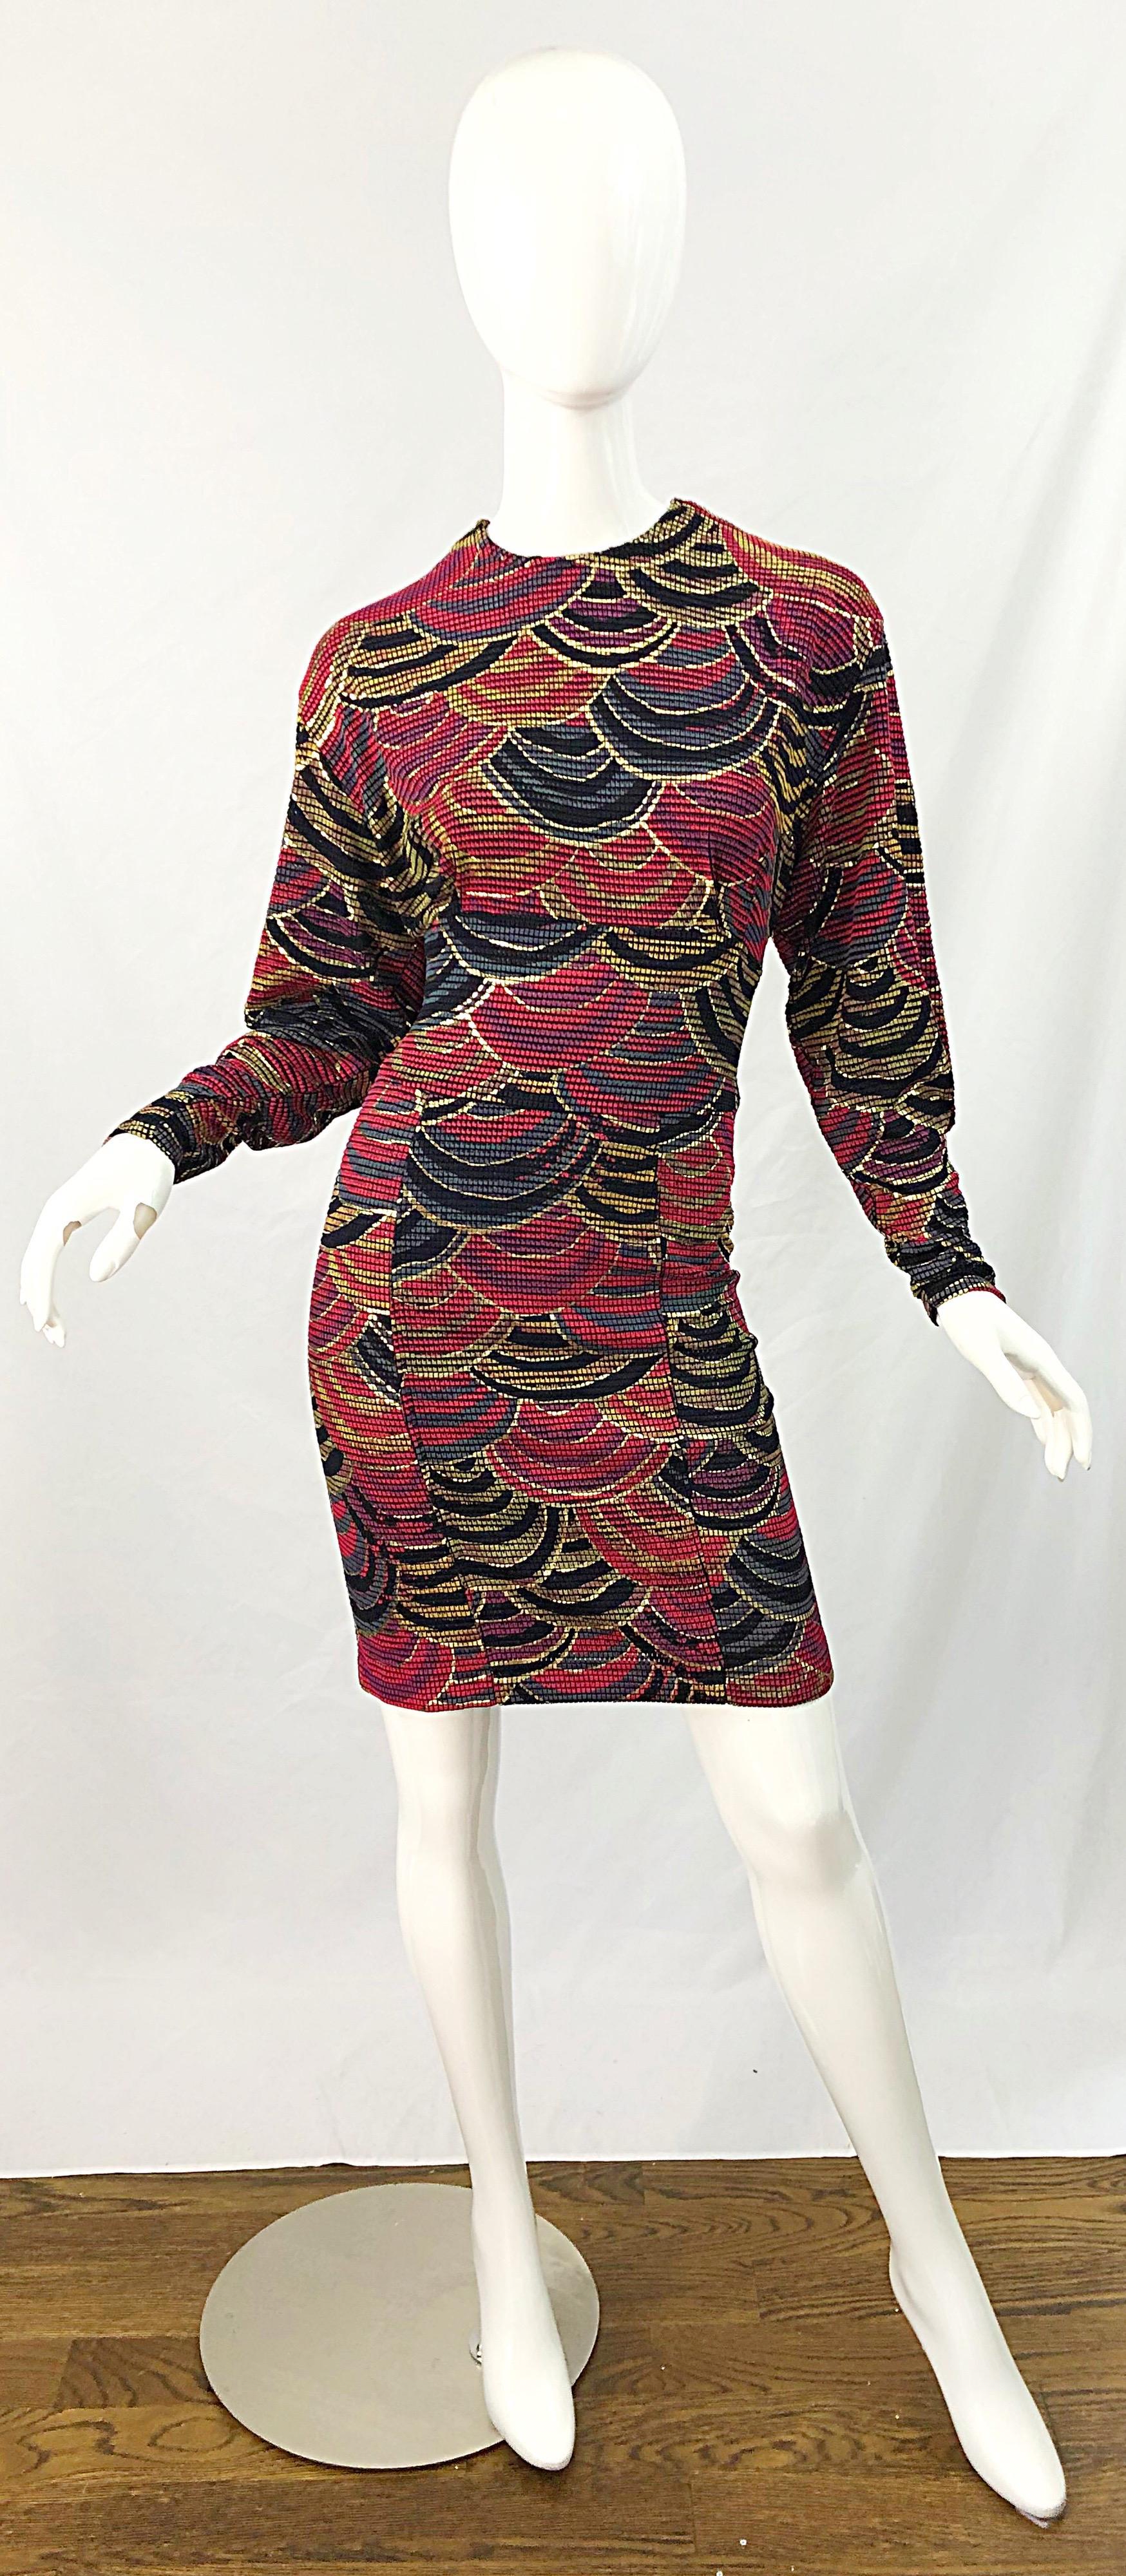 Avant Garde 1980er Jahre handbemalt Gold, Rot und Jäger Wald grün lange Ärmel reversible Kleid ! Dieses Kleid wurde so konzipiert, dass man es entweder mit dem Reißverschluss vorne oder hinten tragen kann. Auf beiden Seiten befinden sich